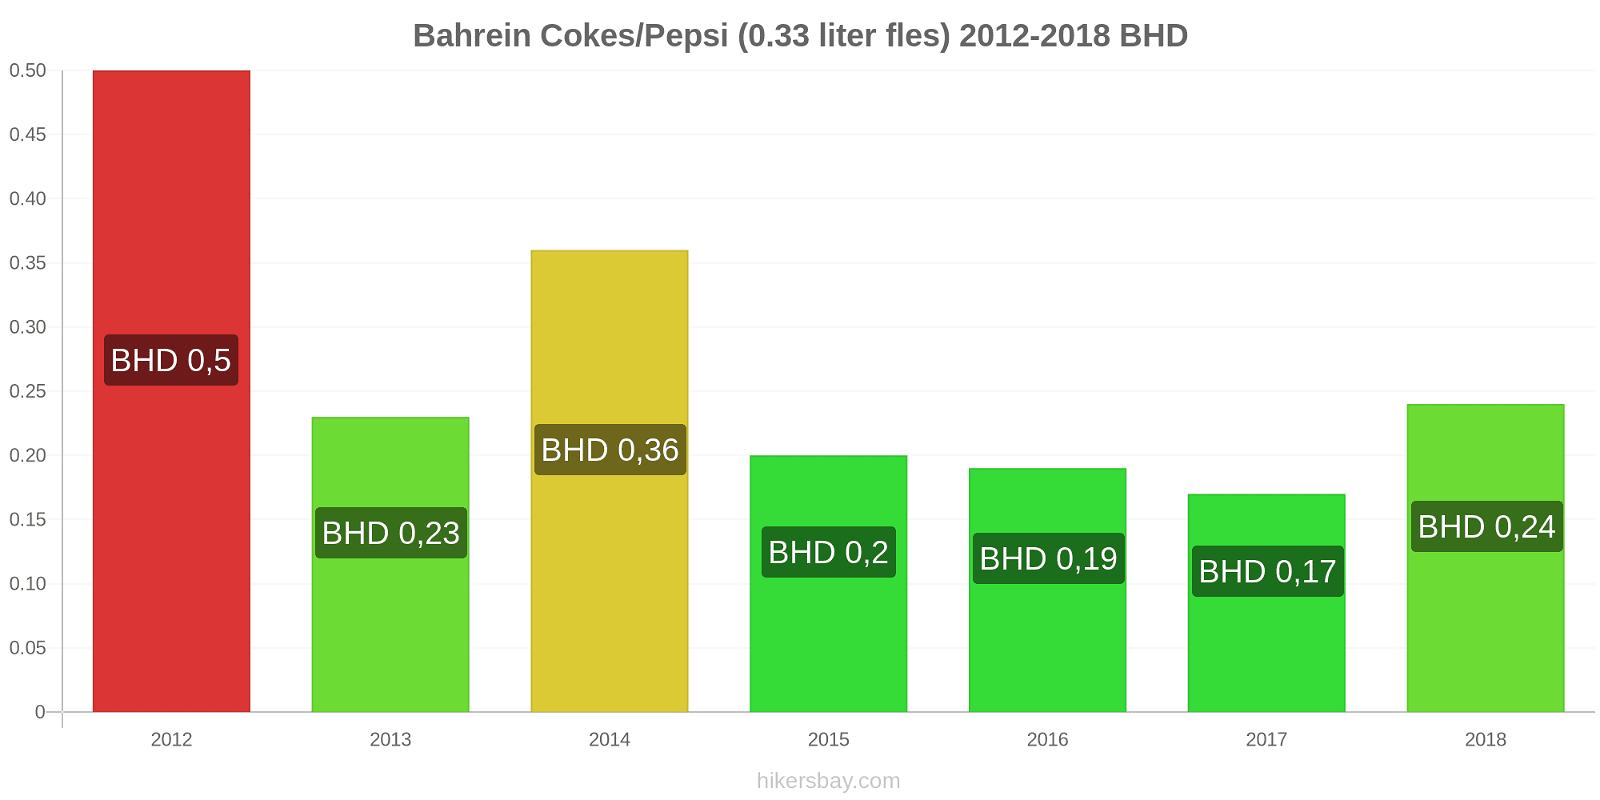 Bahrein prijswijzigingen Coca-Cola/Pepsi (0.33 liter fles) hikersbay.com